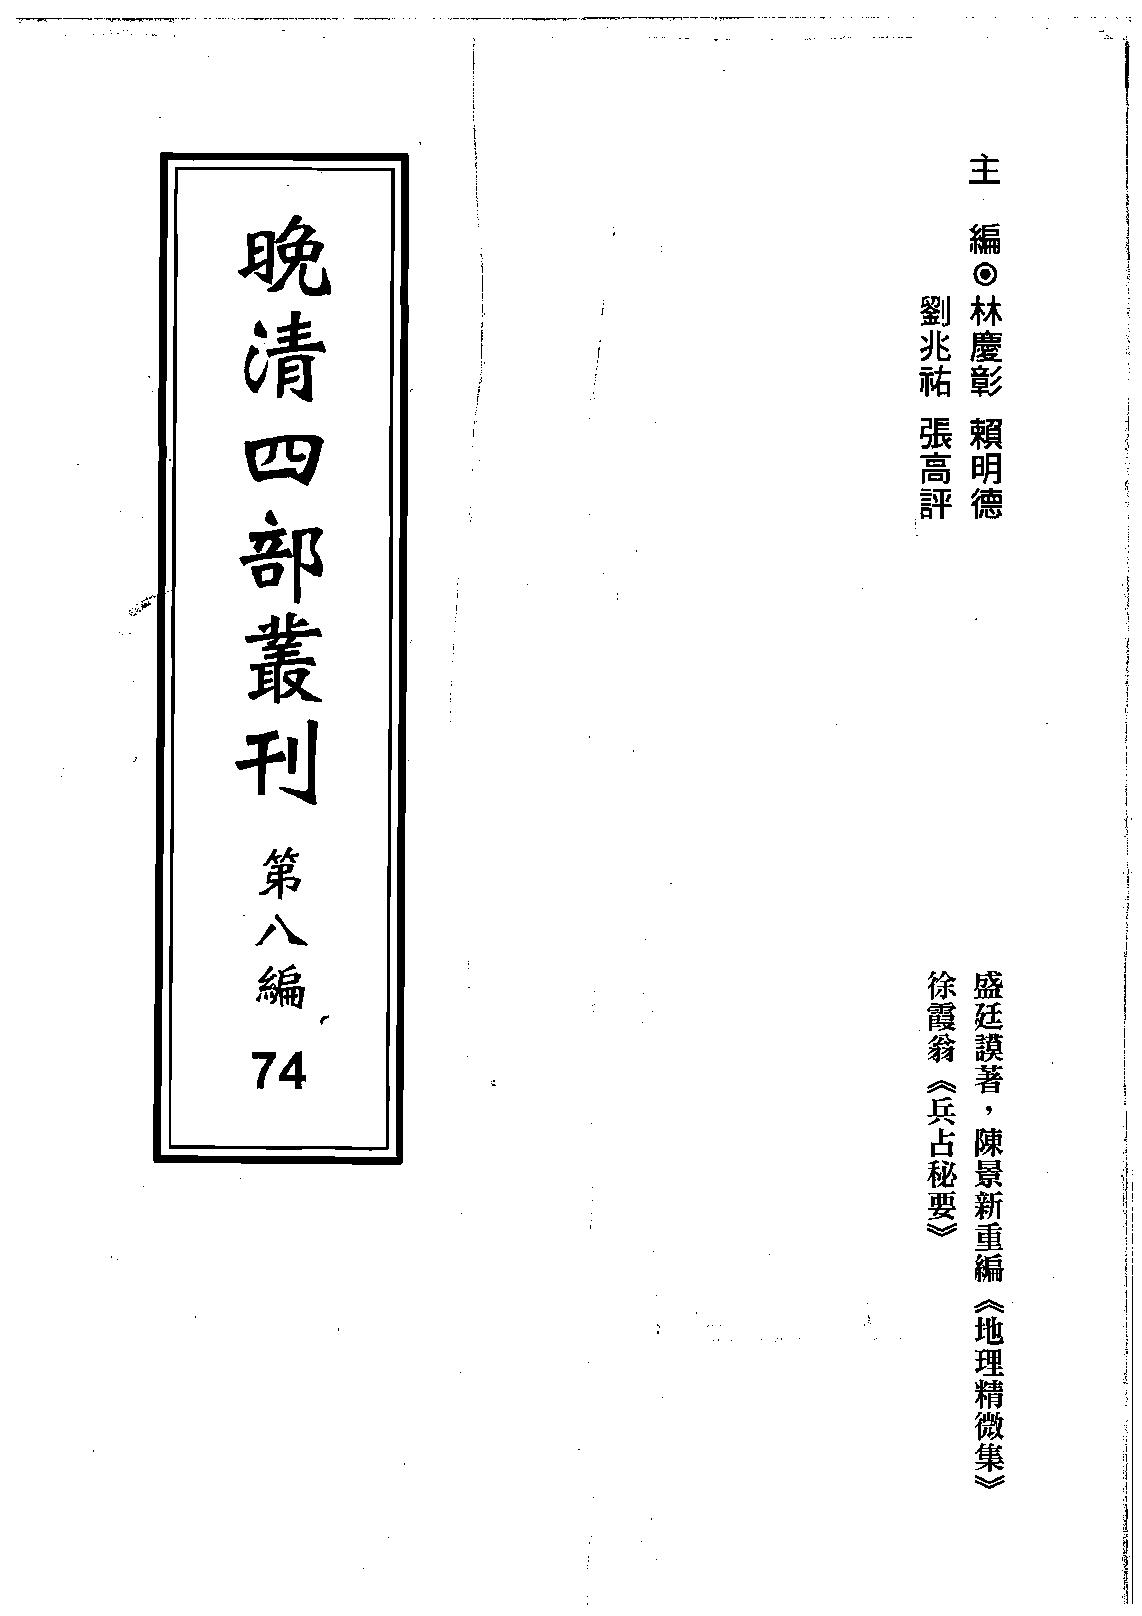 地理精微集光緒戊戌江寧藩署刊本.pdf(12.41MB_452页)